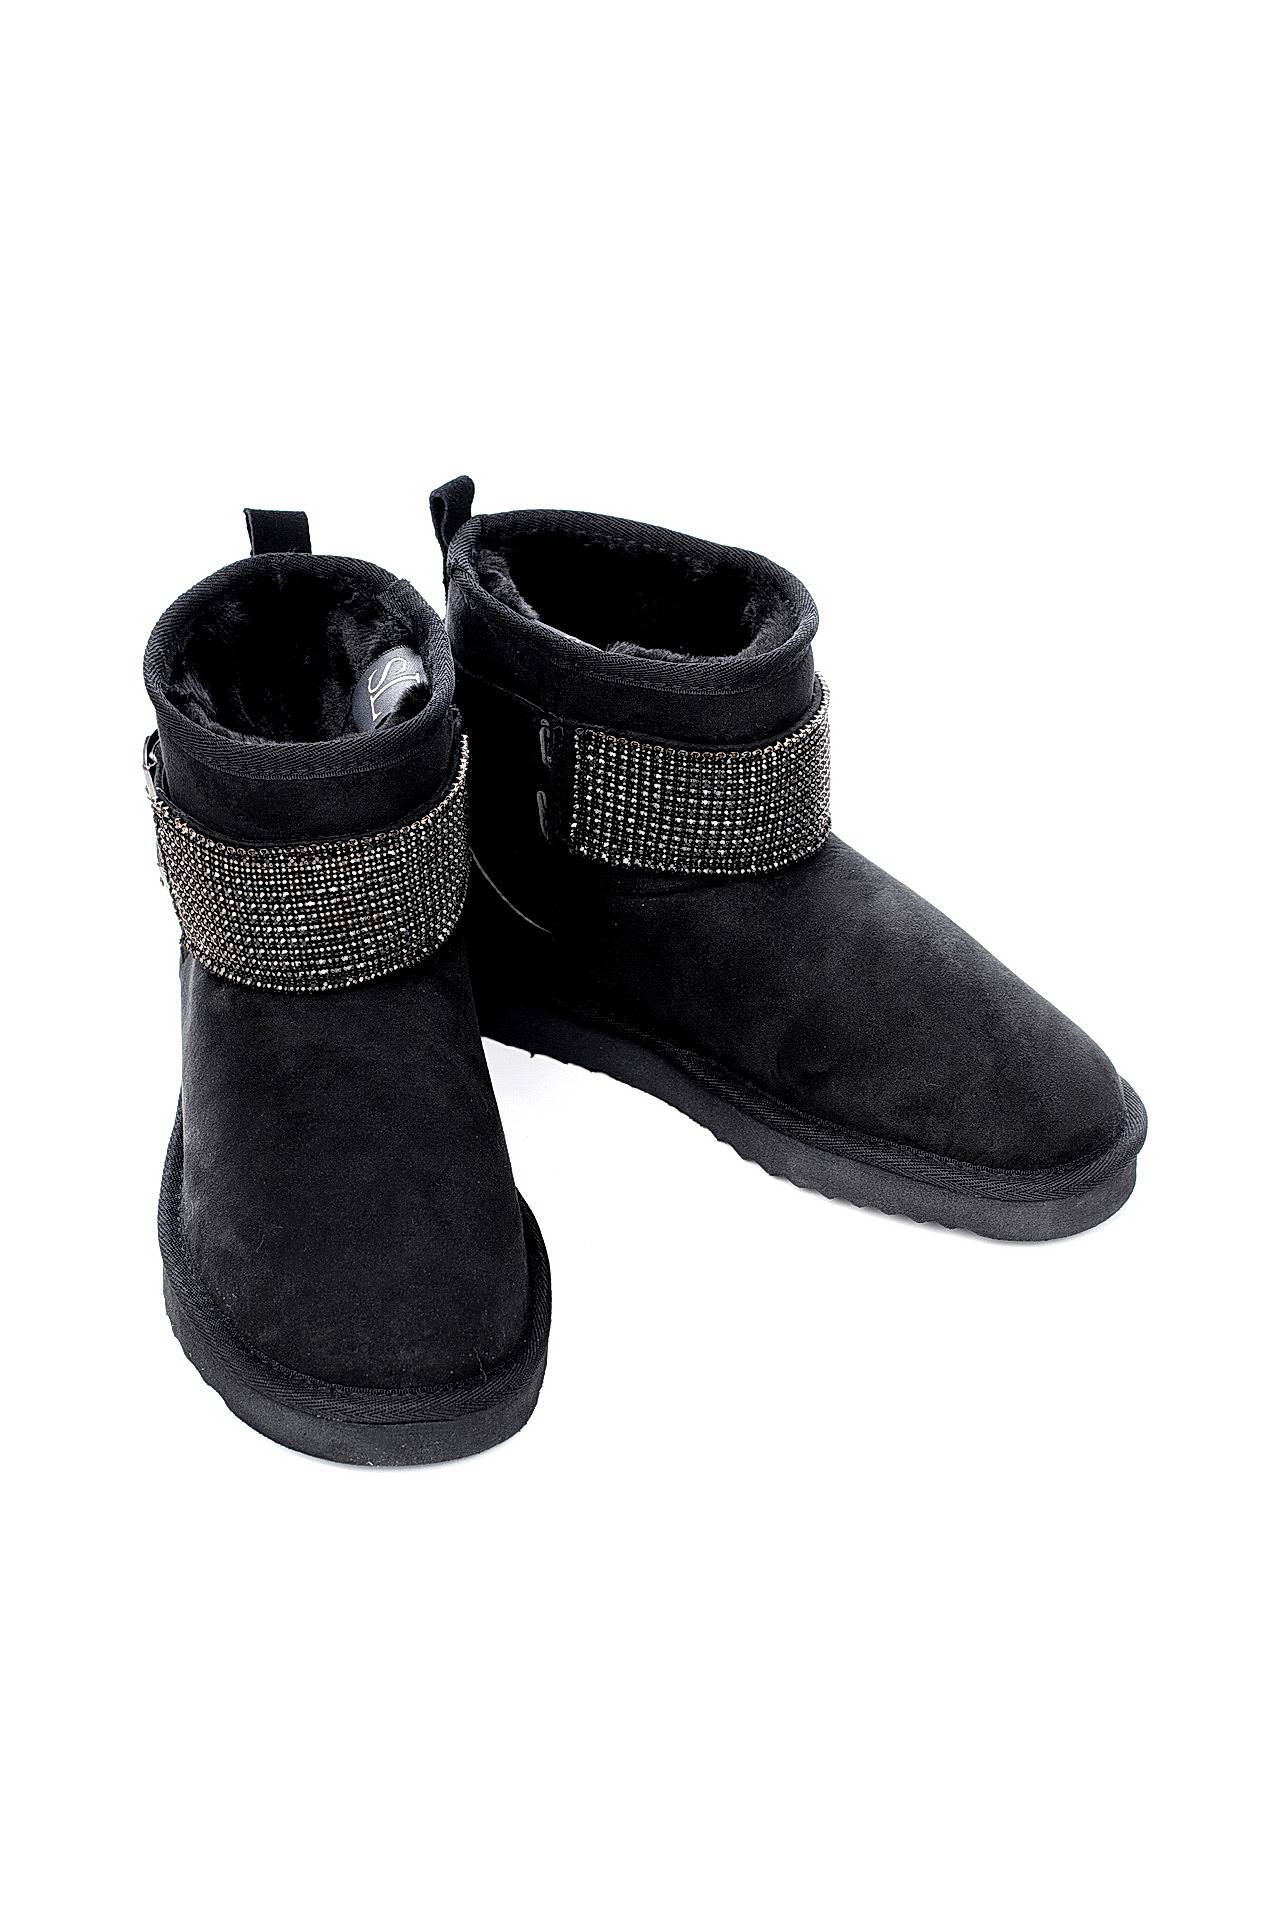 Обувь женская Сапоги LETICIA MILANO by A GEE (155142/16.1). Купить за 6650 руб.